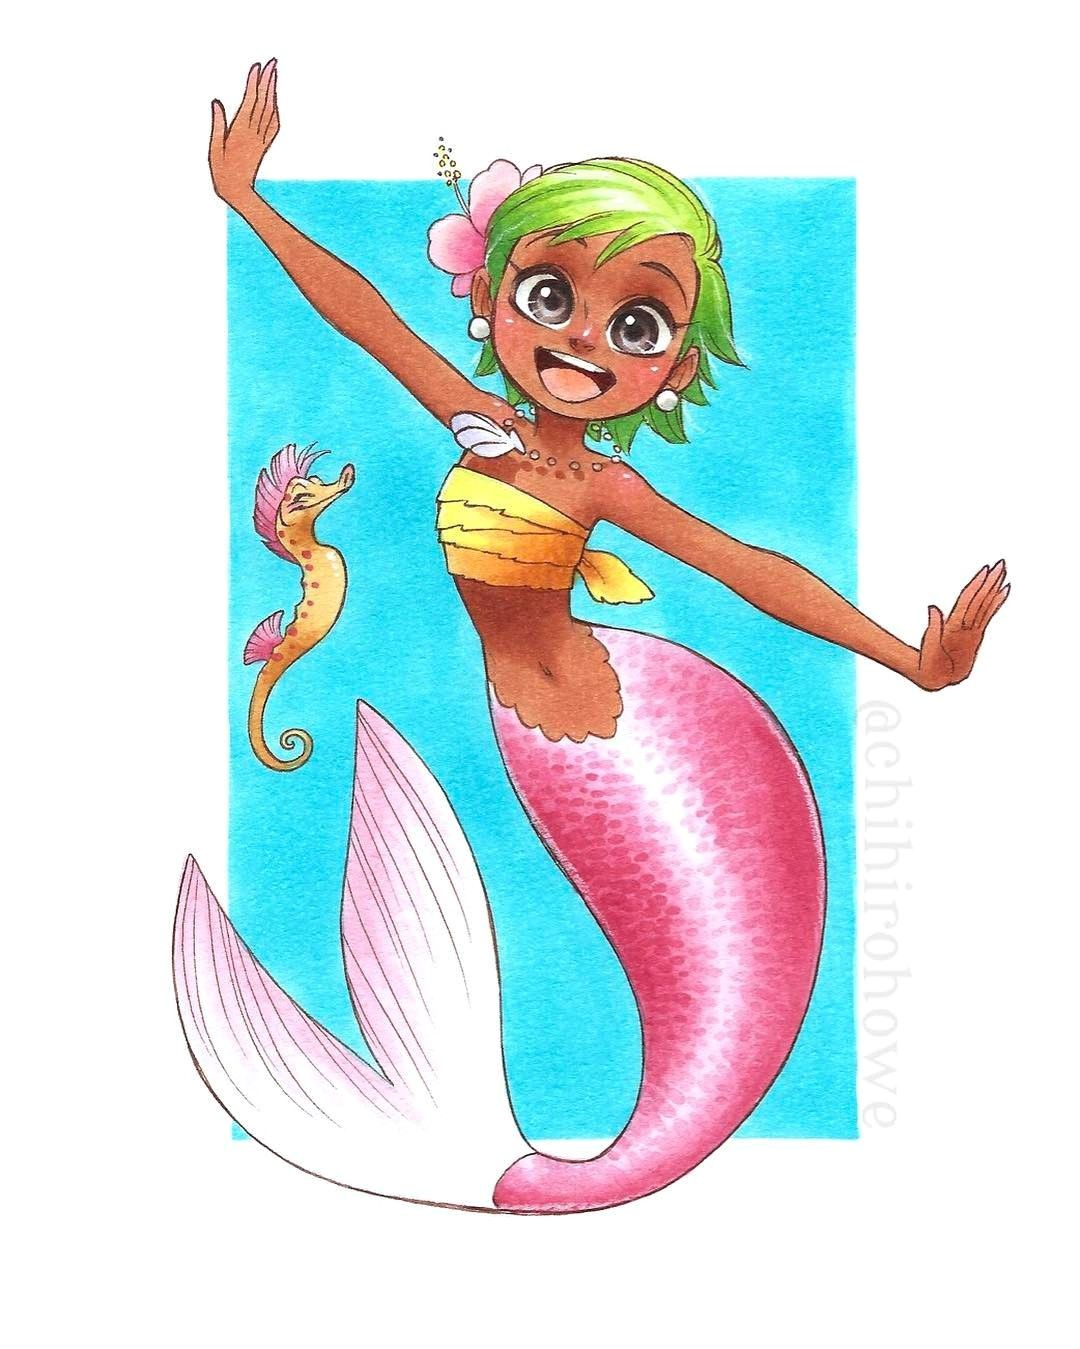 art by chihirohowe siren mermaid mermaid art mermaid pictures fantasy mermaids mermaids